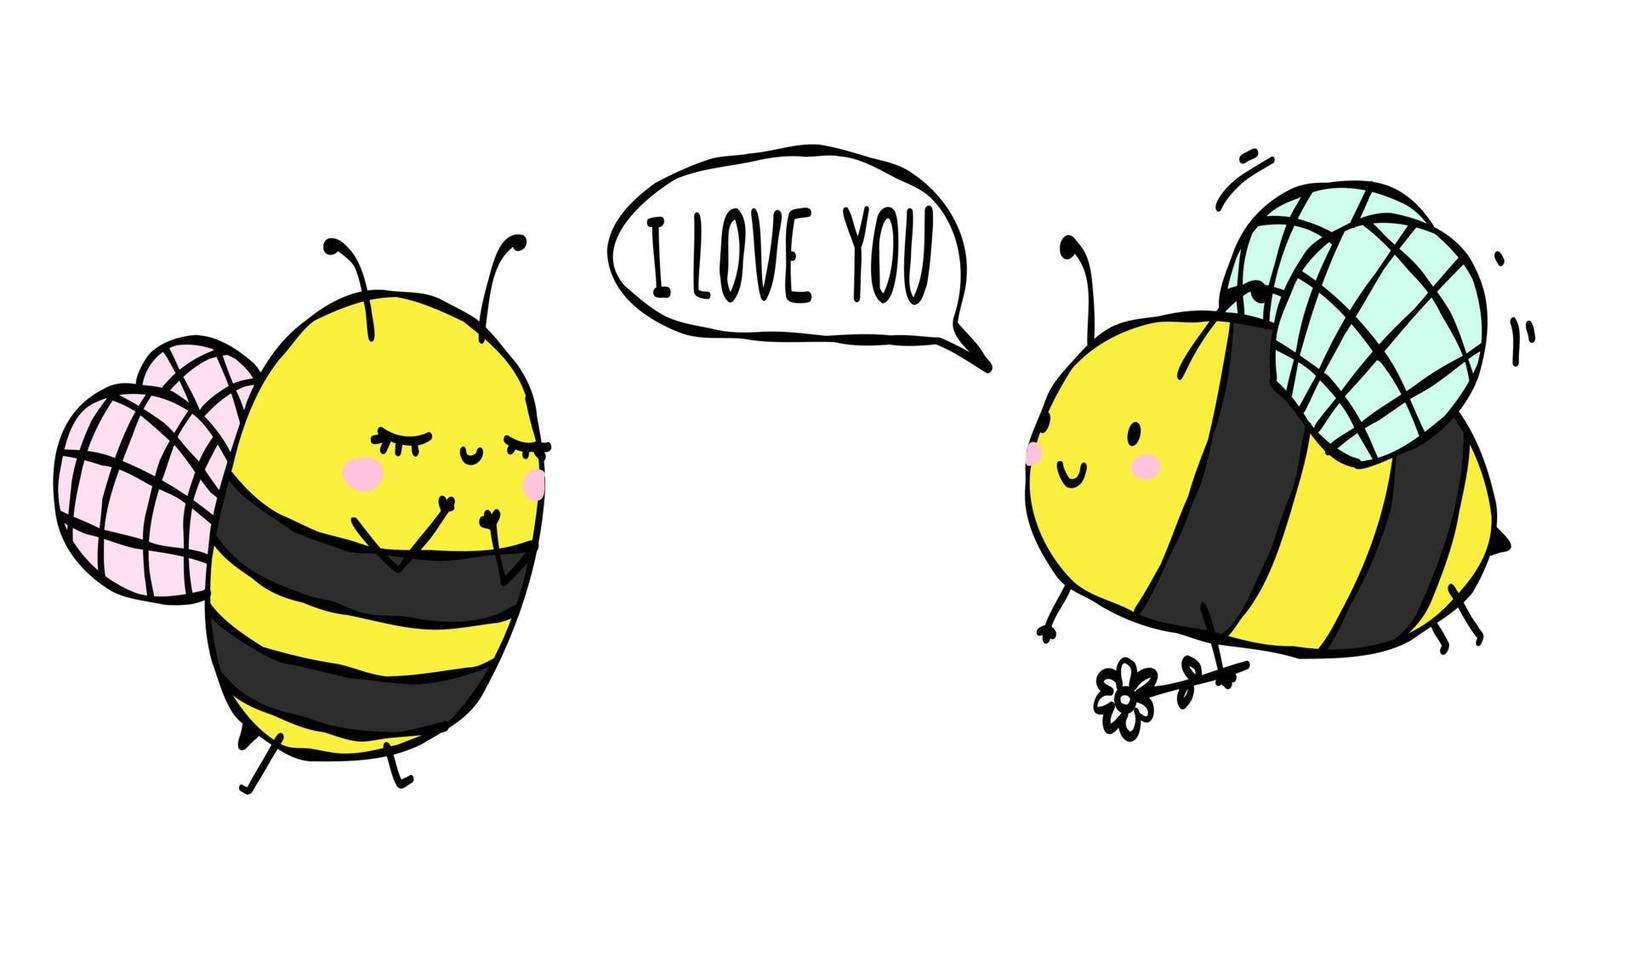 Die Biene sagt, ich liebe dich. süßes insekt mit herzpostkarte, poster valentinstag, hintergrund. hand gezeichnete vektorillustration. vektor